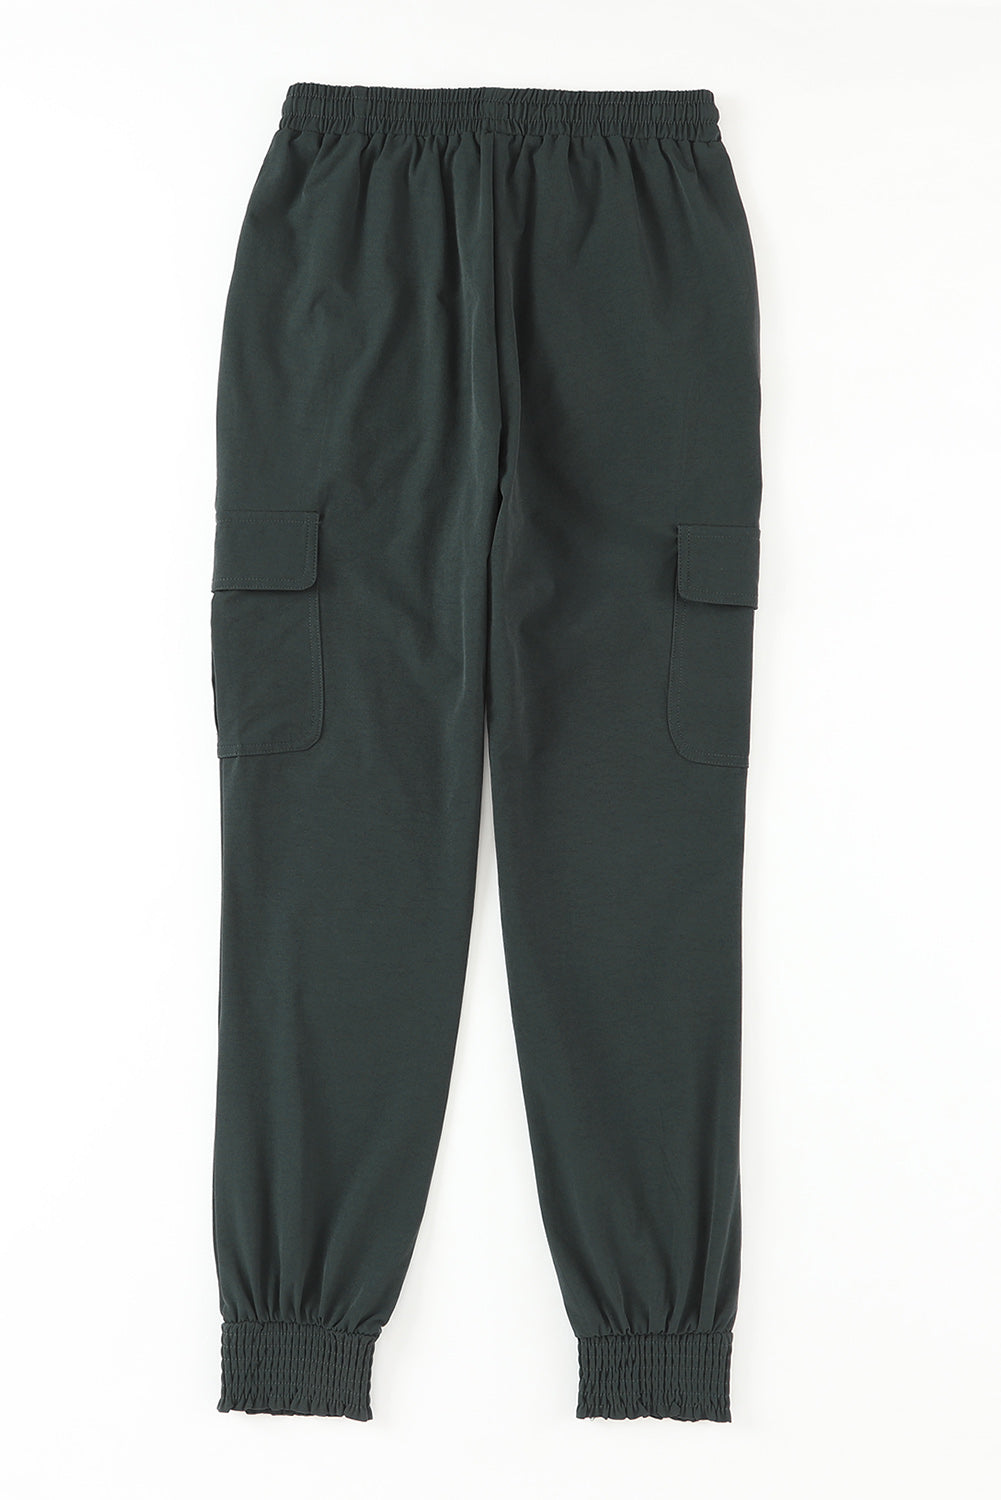 Graue, schmal geschnittene Jogginghose mit Kordelzug und hoher Taille und Seitentaschen